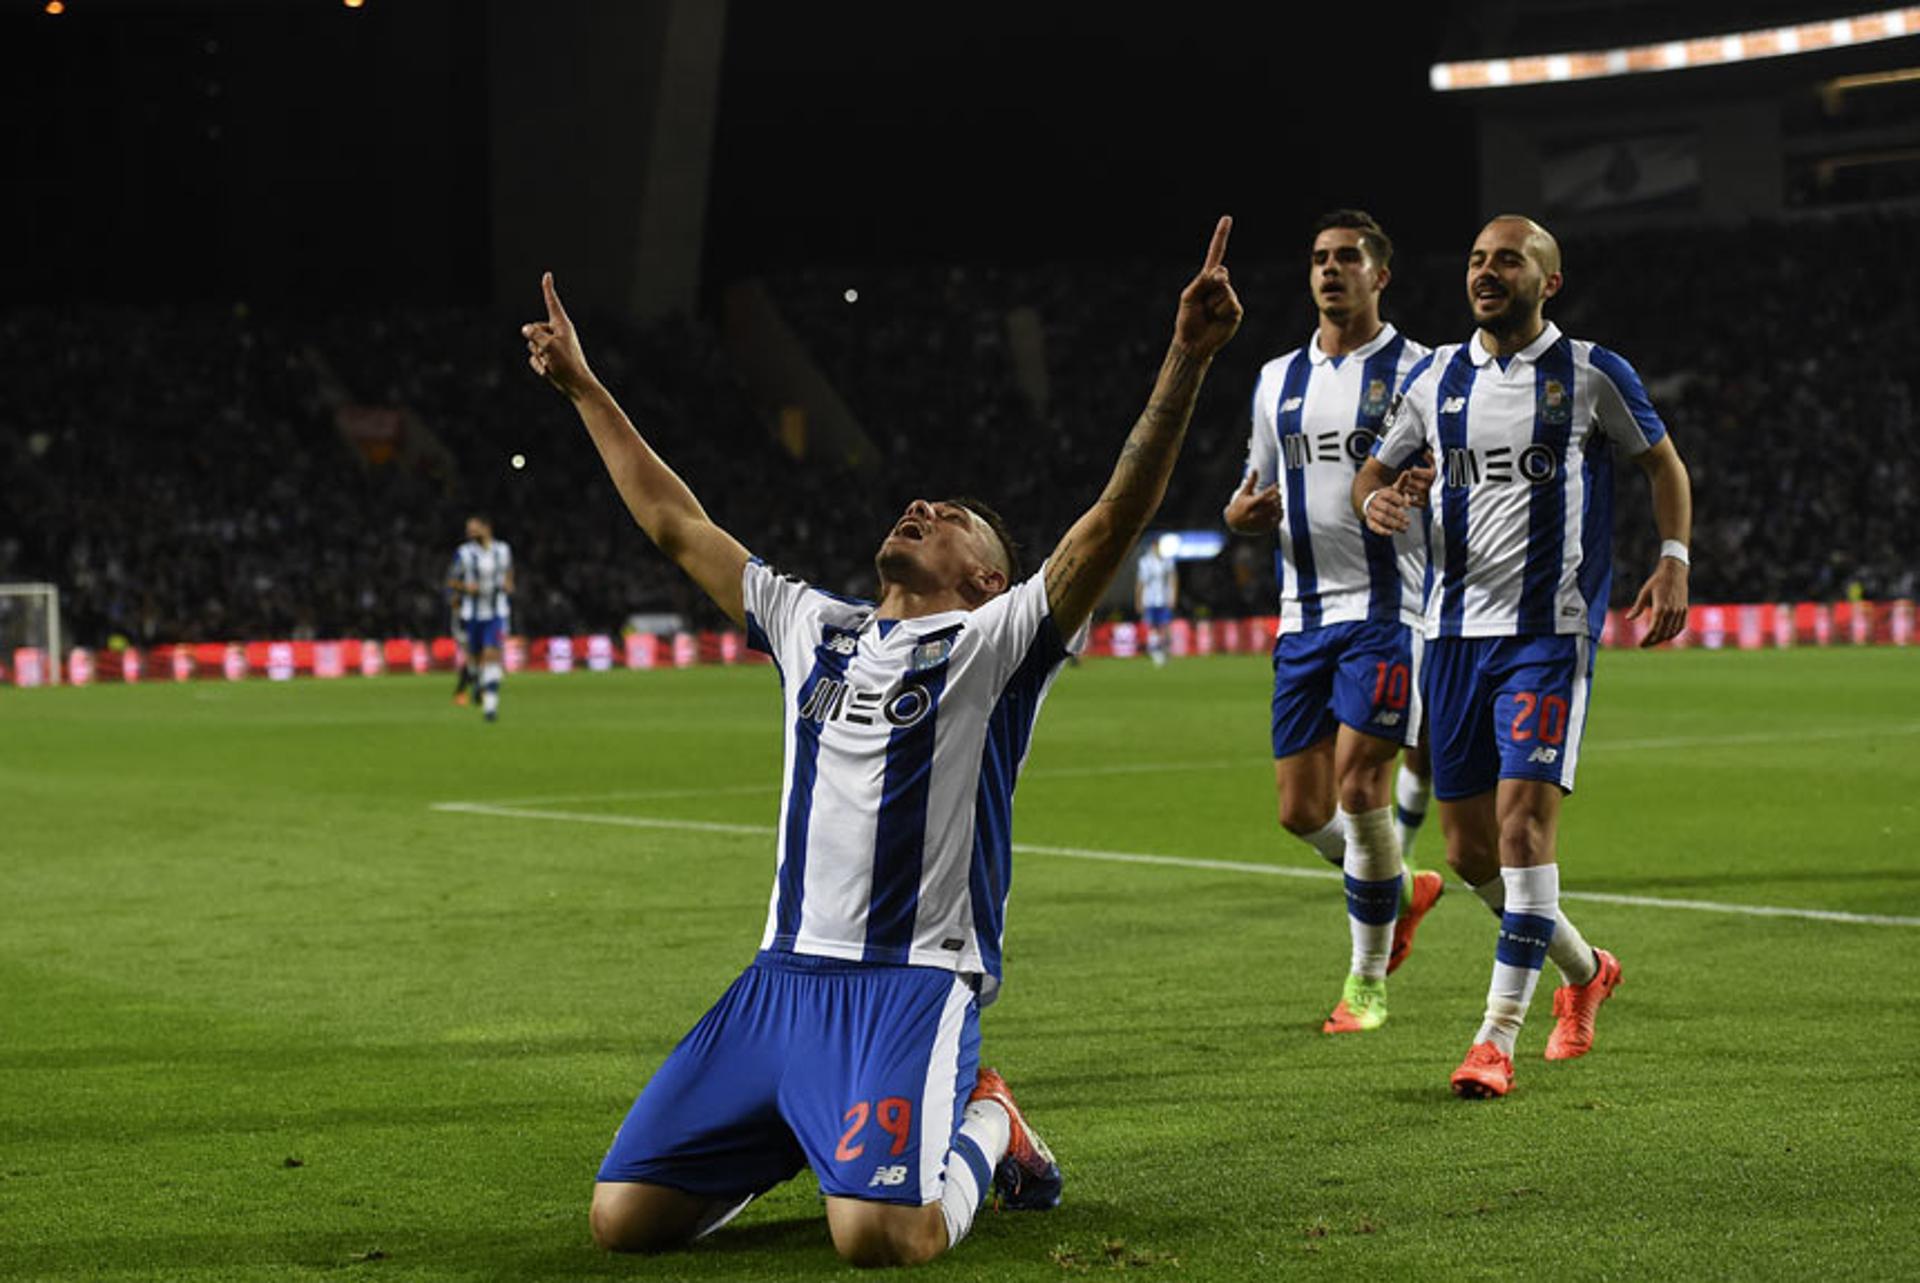 Tiquinho (Porto) - O jogador marcou uma vez e ajudou o Porto a conquistar a quinta vitória seguida. Triunfo de 5 a 1 sobre o Portimonense.